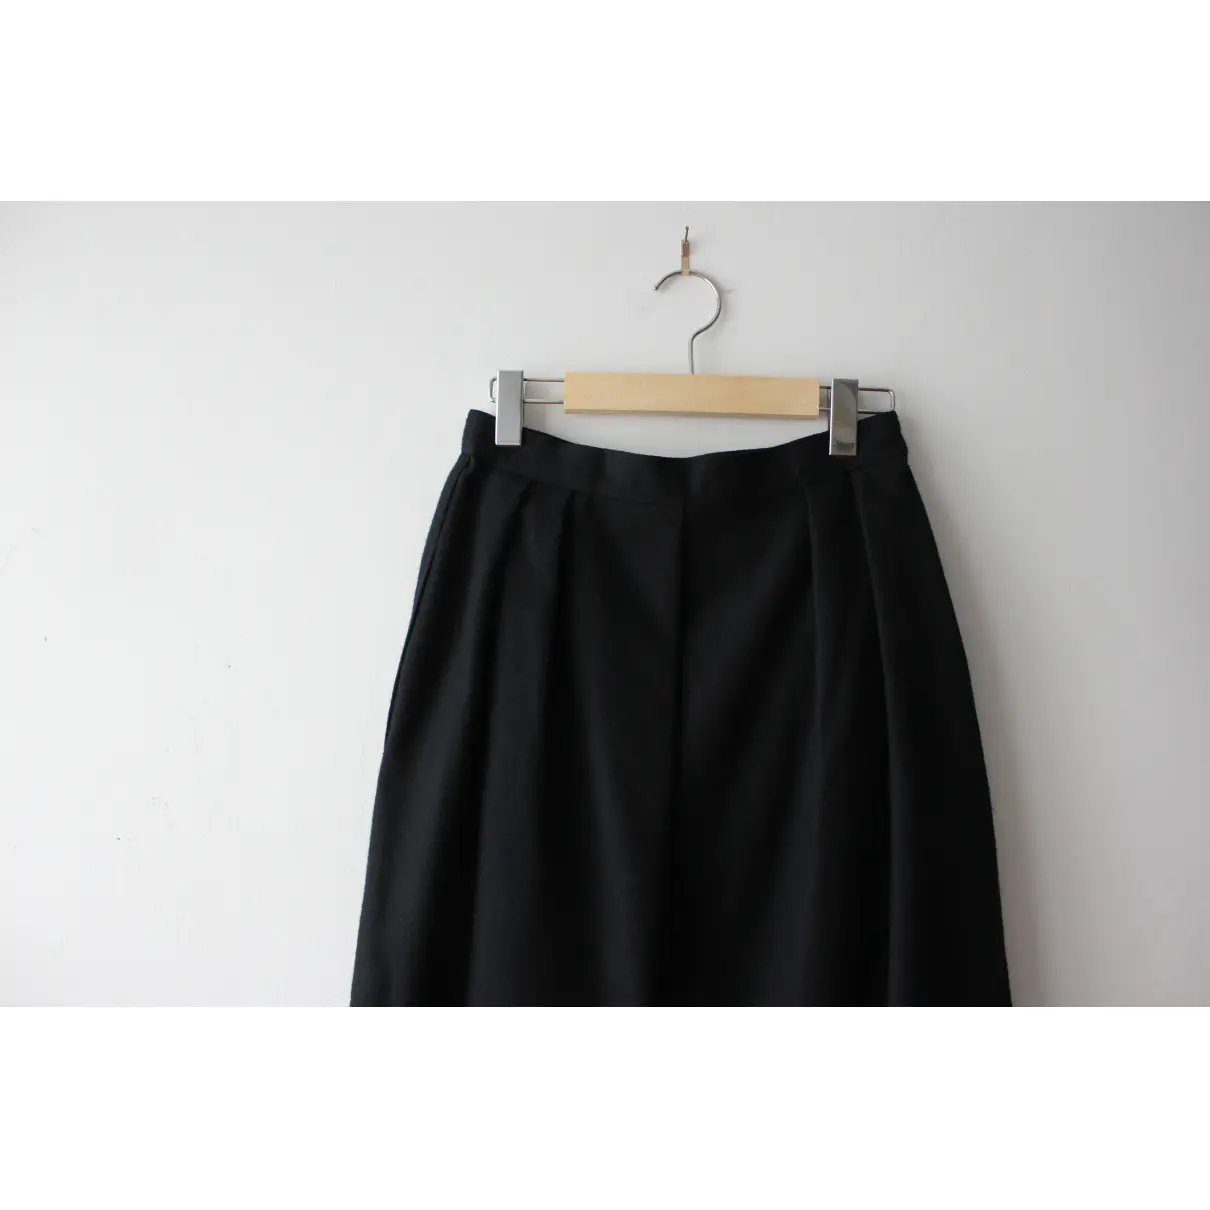 Wool skirt Anne-Marie Beretta - Vintage